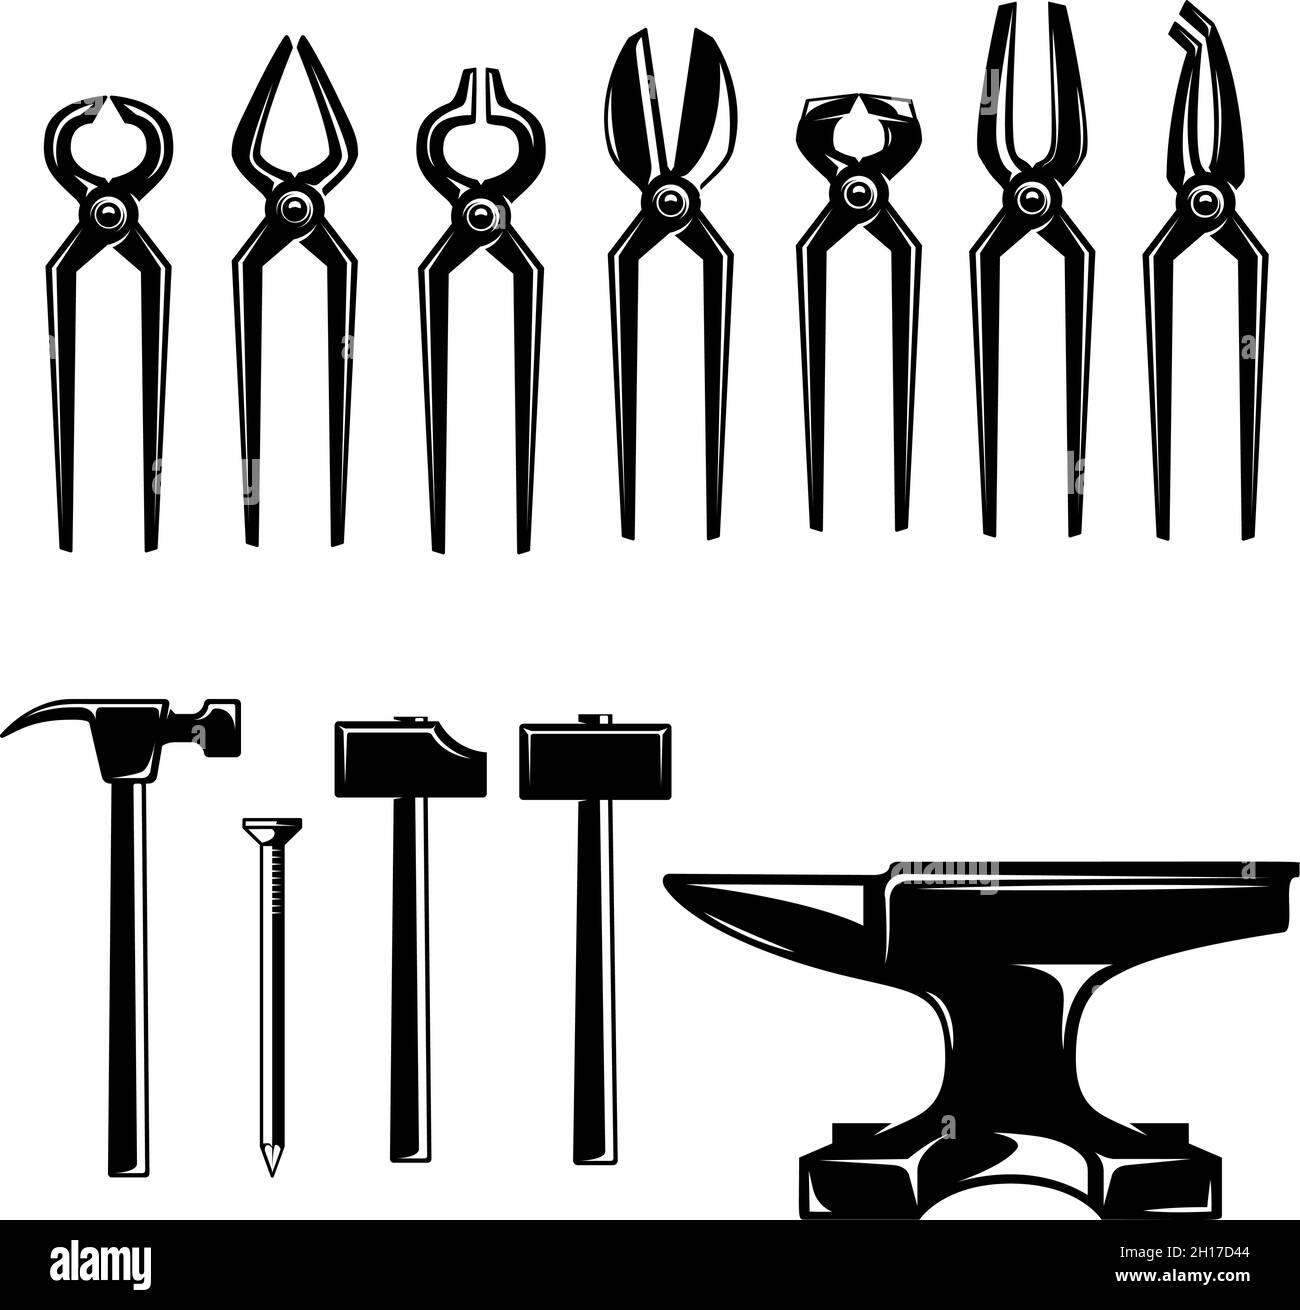 Illustration of blacksmith pliers, hammers, anvils. Design element for logo, label, sign, emblem, poster. Vector illustration Stock Vector